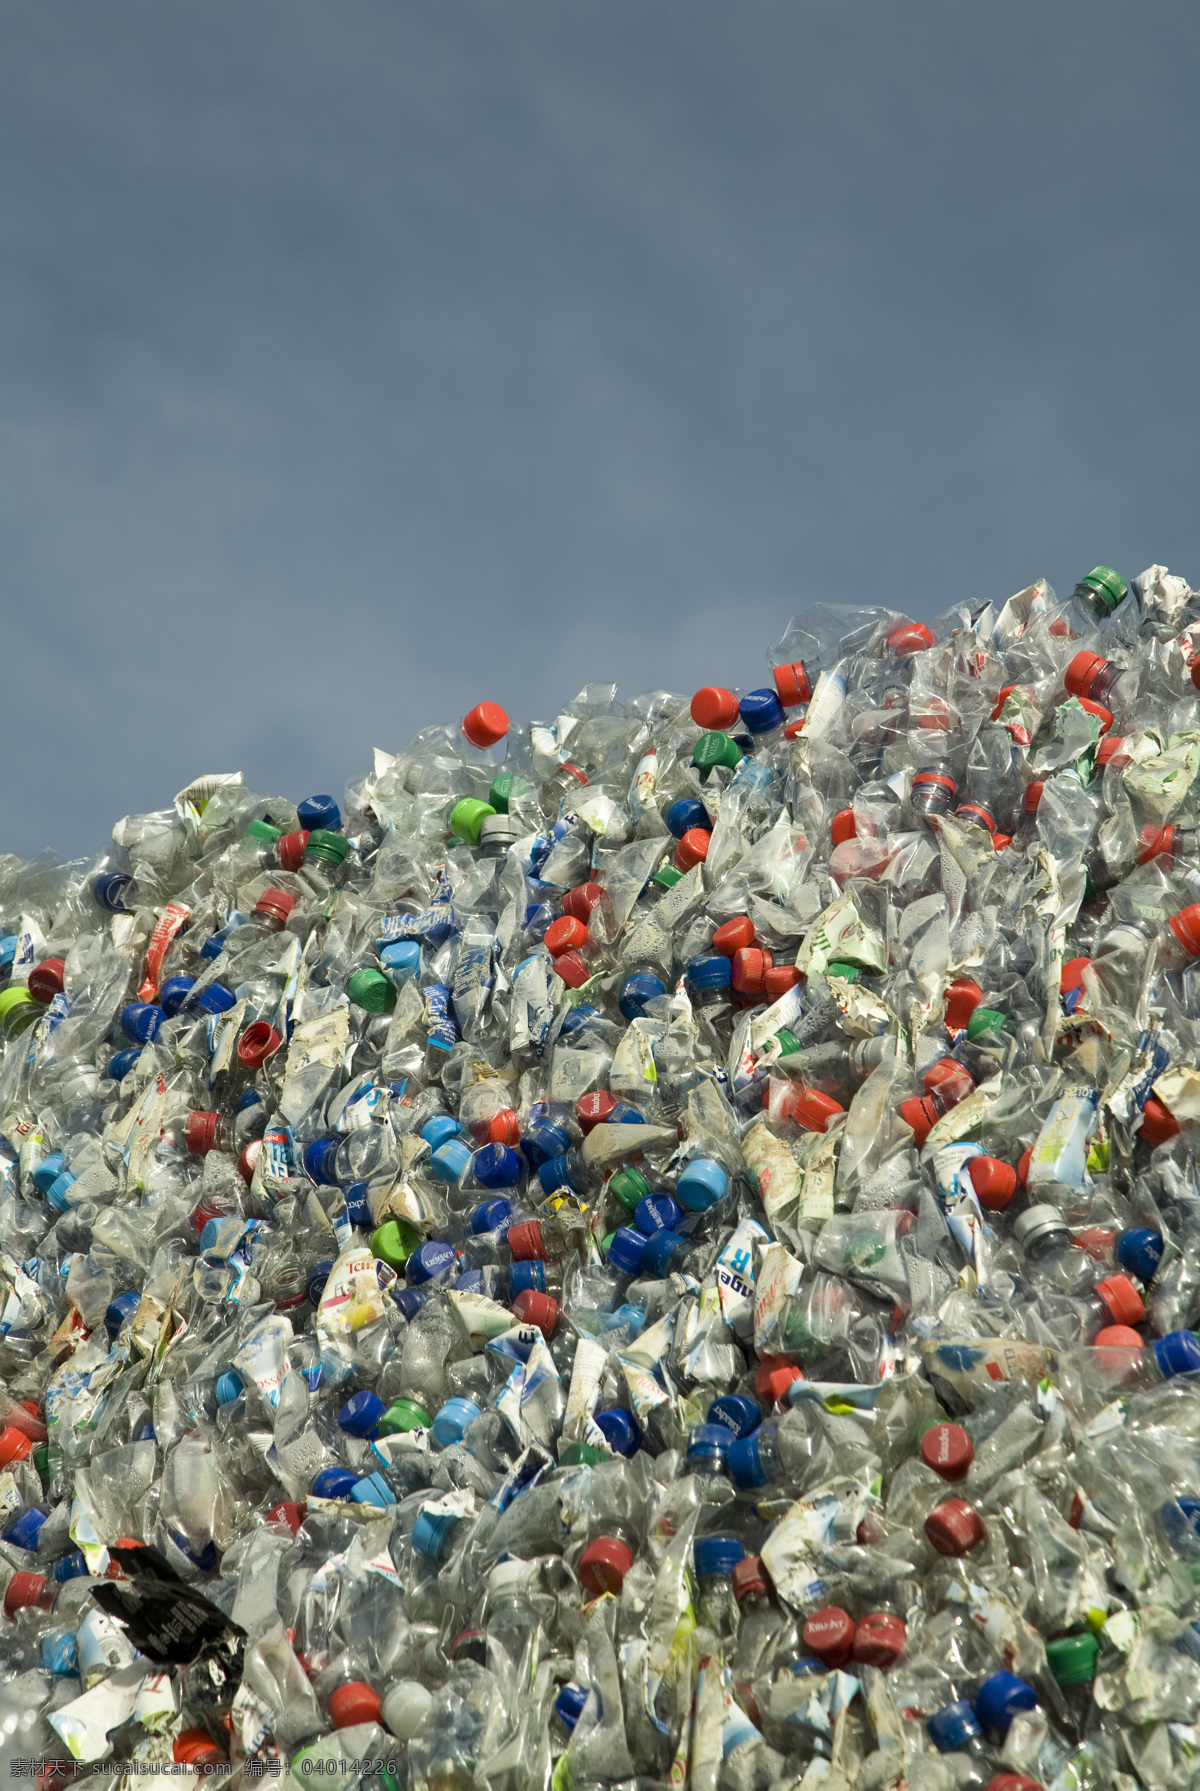 回收利用 易拉罐 塑料瓶 可乐瓶 饮料瓶 回收站 循环利用 垃圾站 废品回收 能源节能环保 生活百科